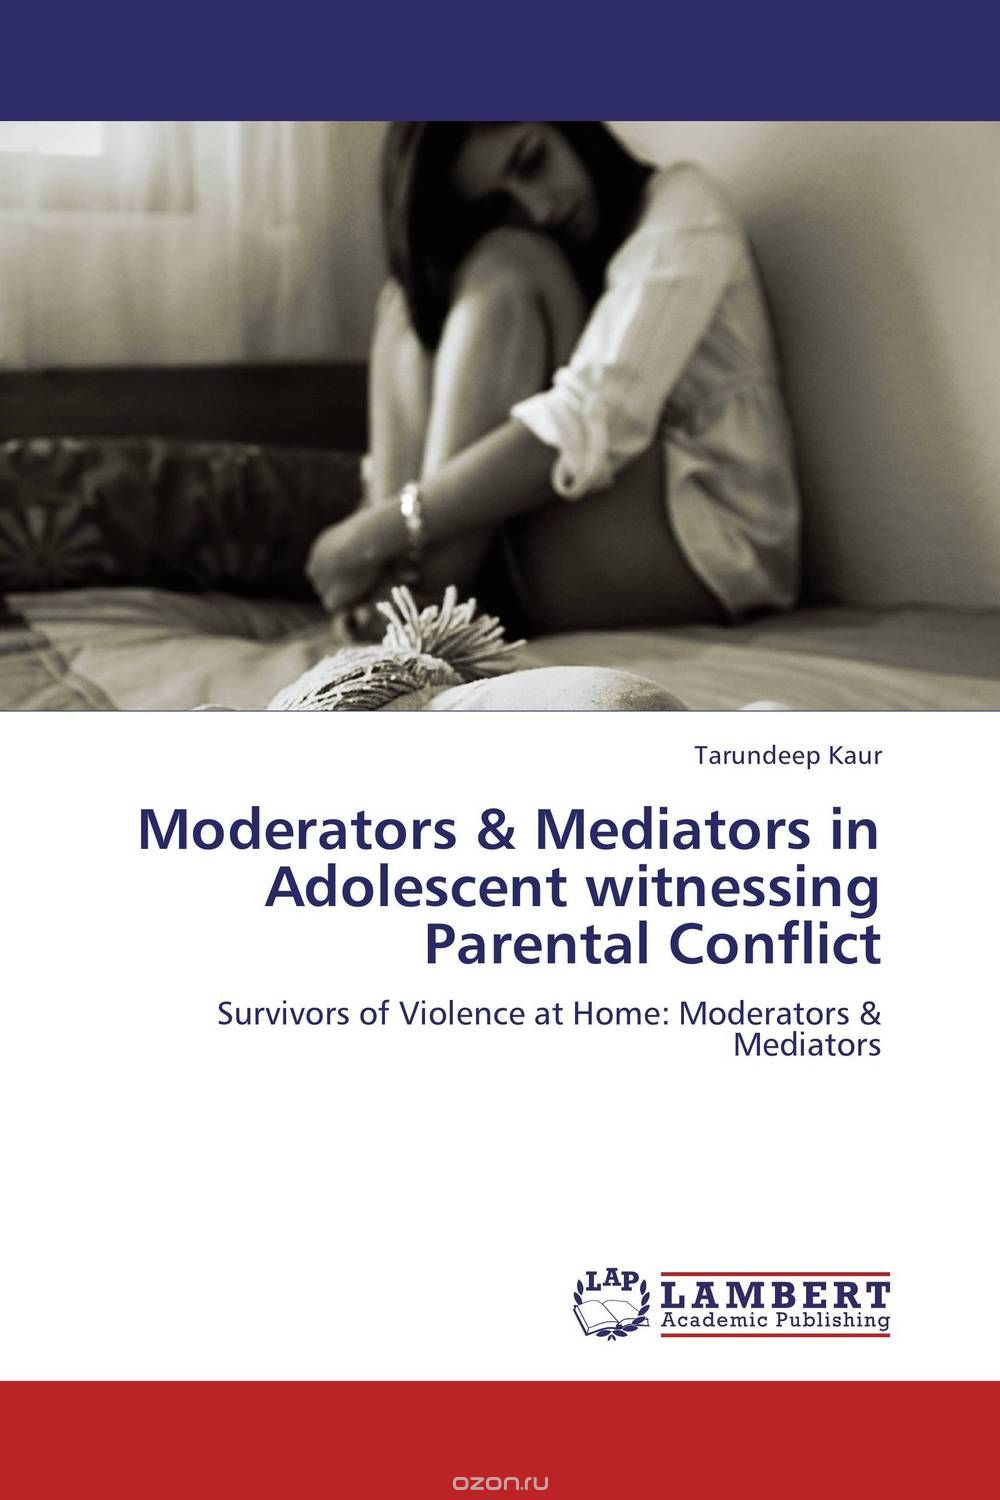 Скачать книгу "Moderators & Mediators in Adolescent witnessing Parental Conflict"